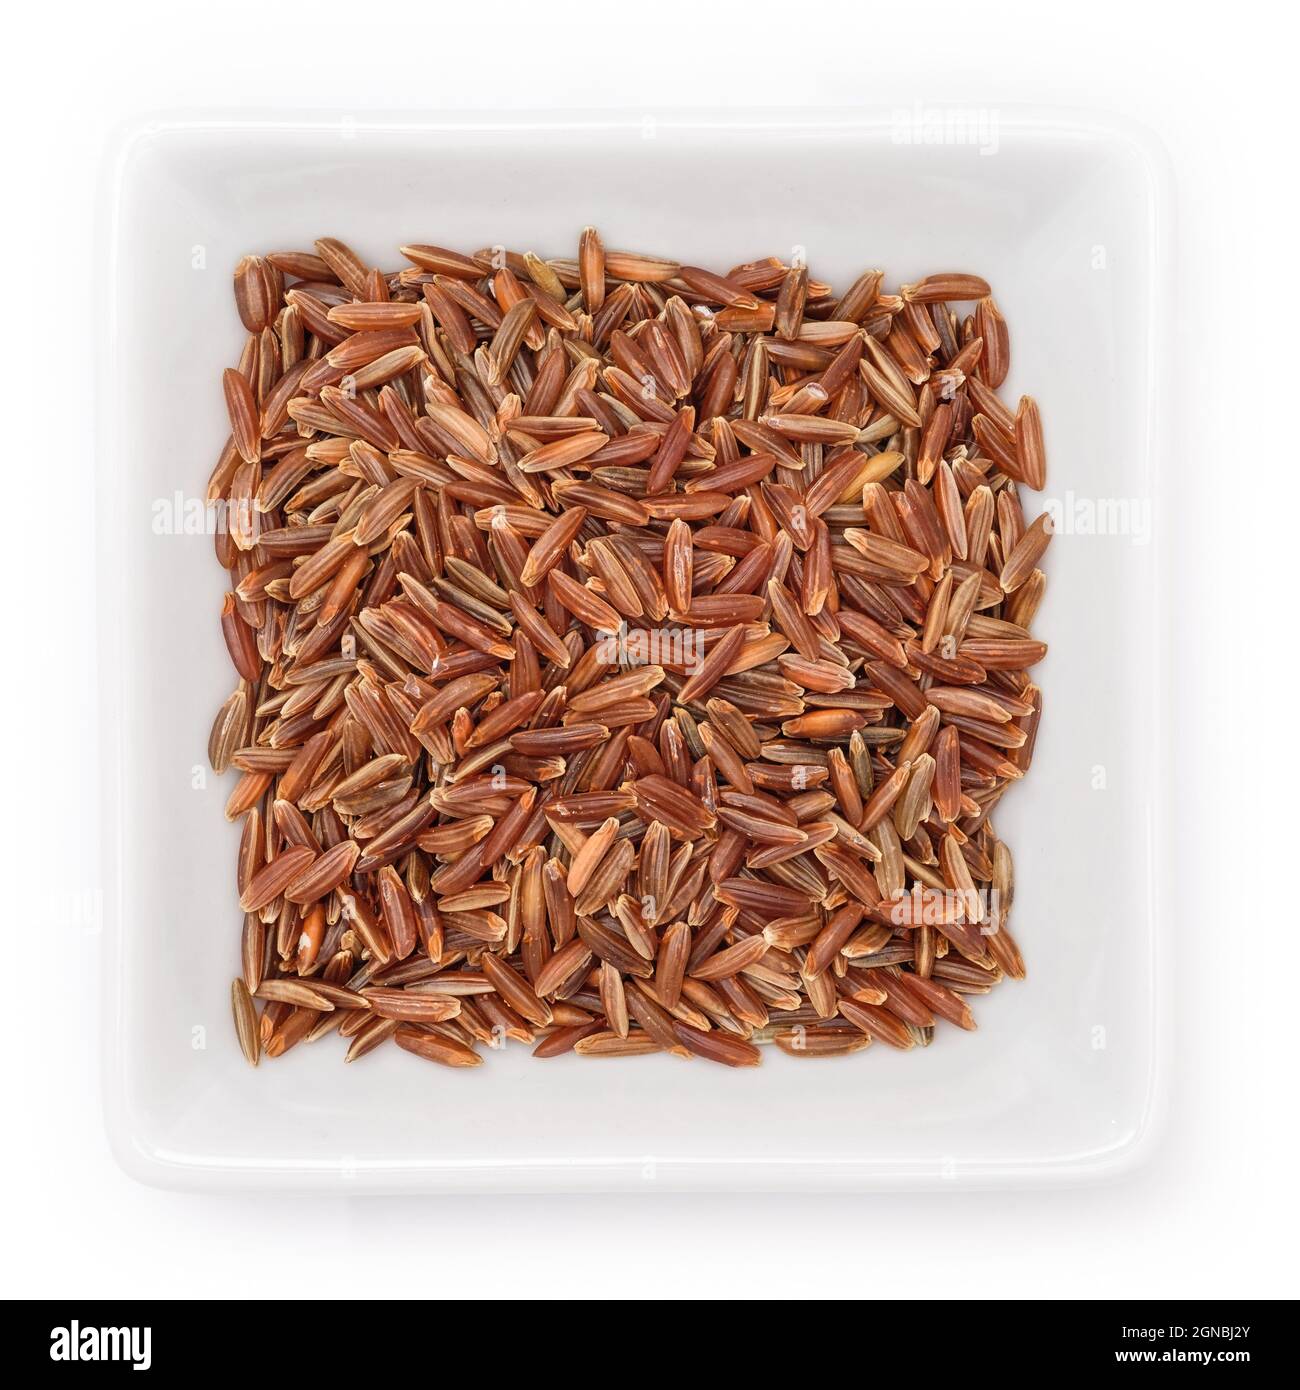 Vista dall'alto del riso camargue crudo marrone-rosso in una ciotola su sfondo bianco Foto Stock